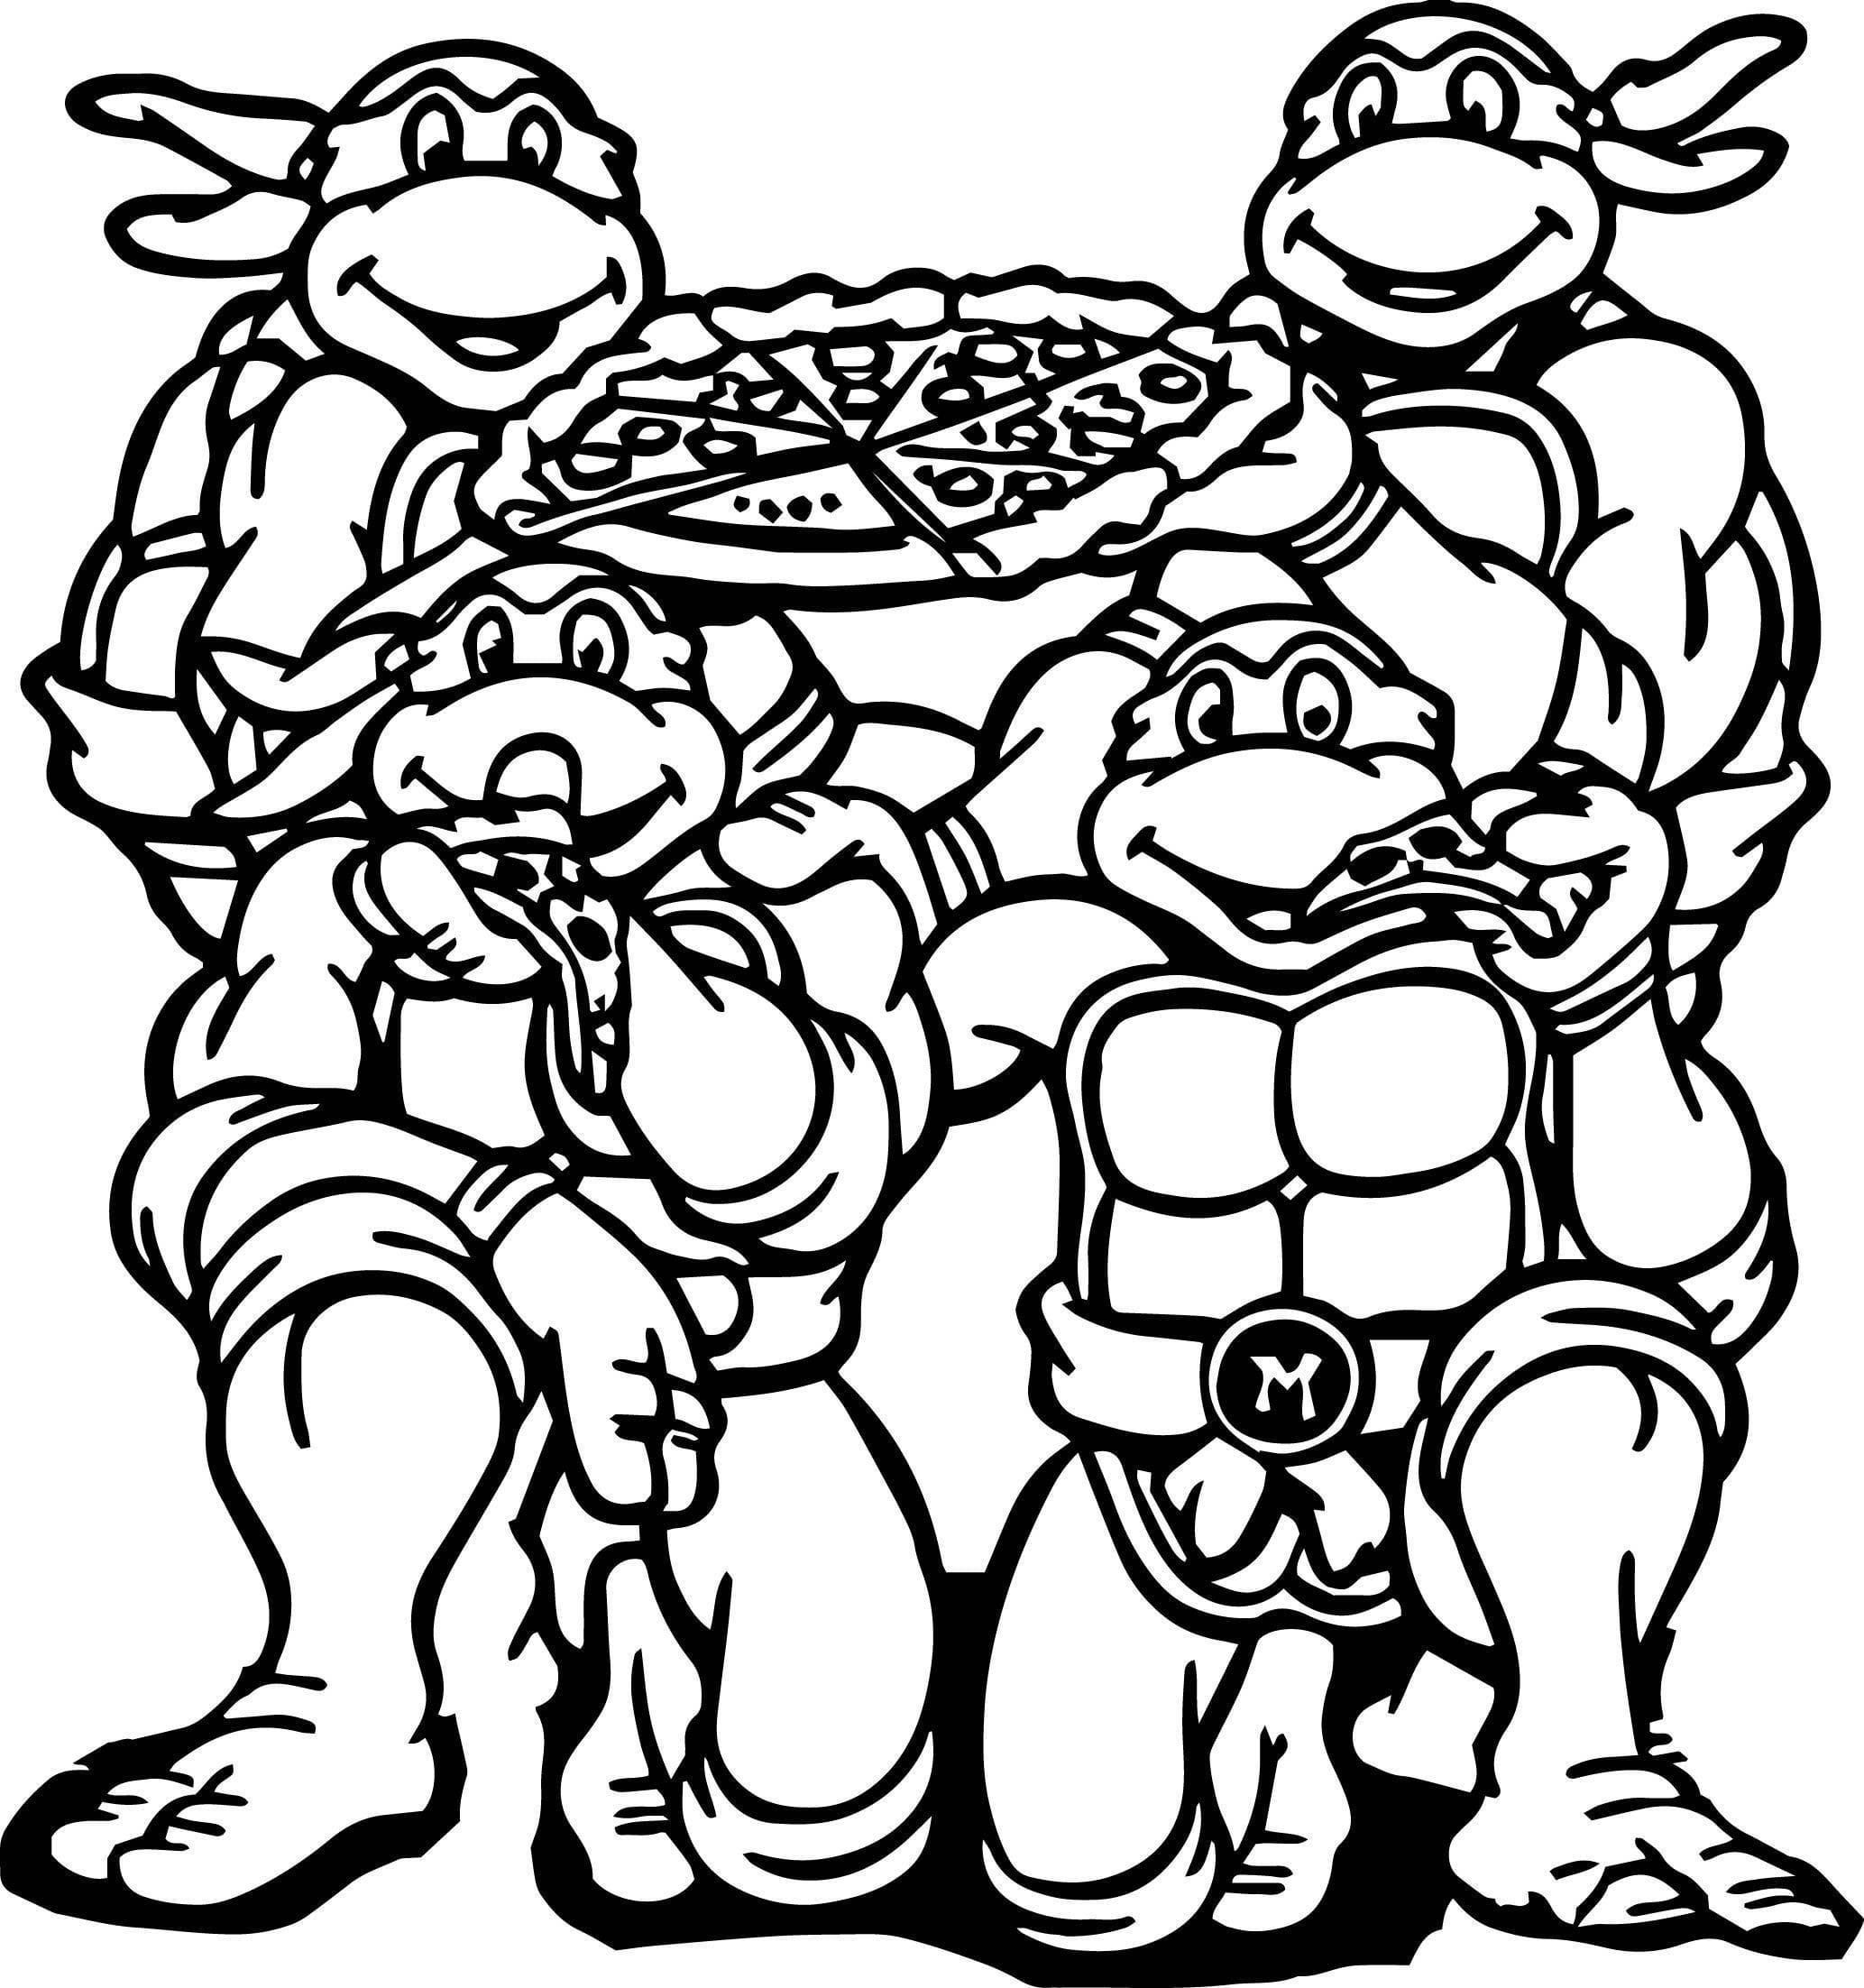 네 마리의 닌자 거북이 피자를 먹고 있는 모습 coloring page